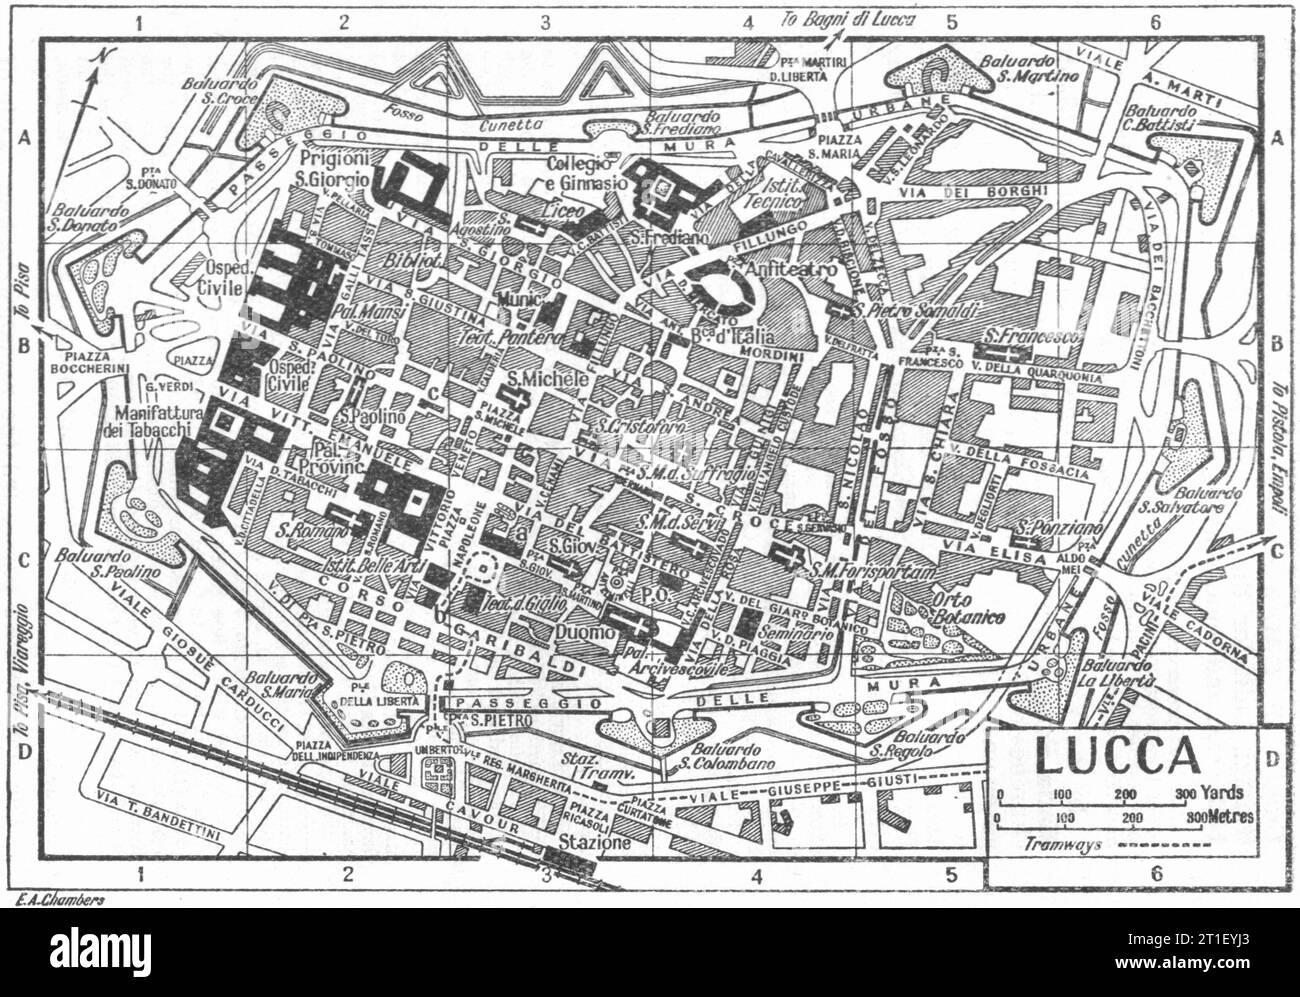 Piano città DI LUCCA. Italia 1953 vecchia mappa d'epoca Foto Stock